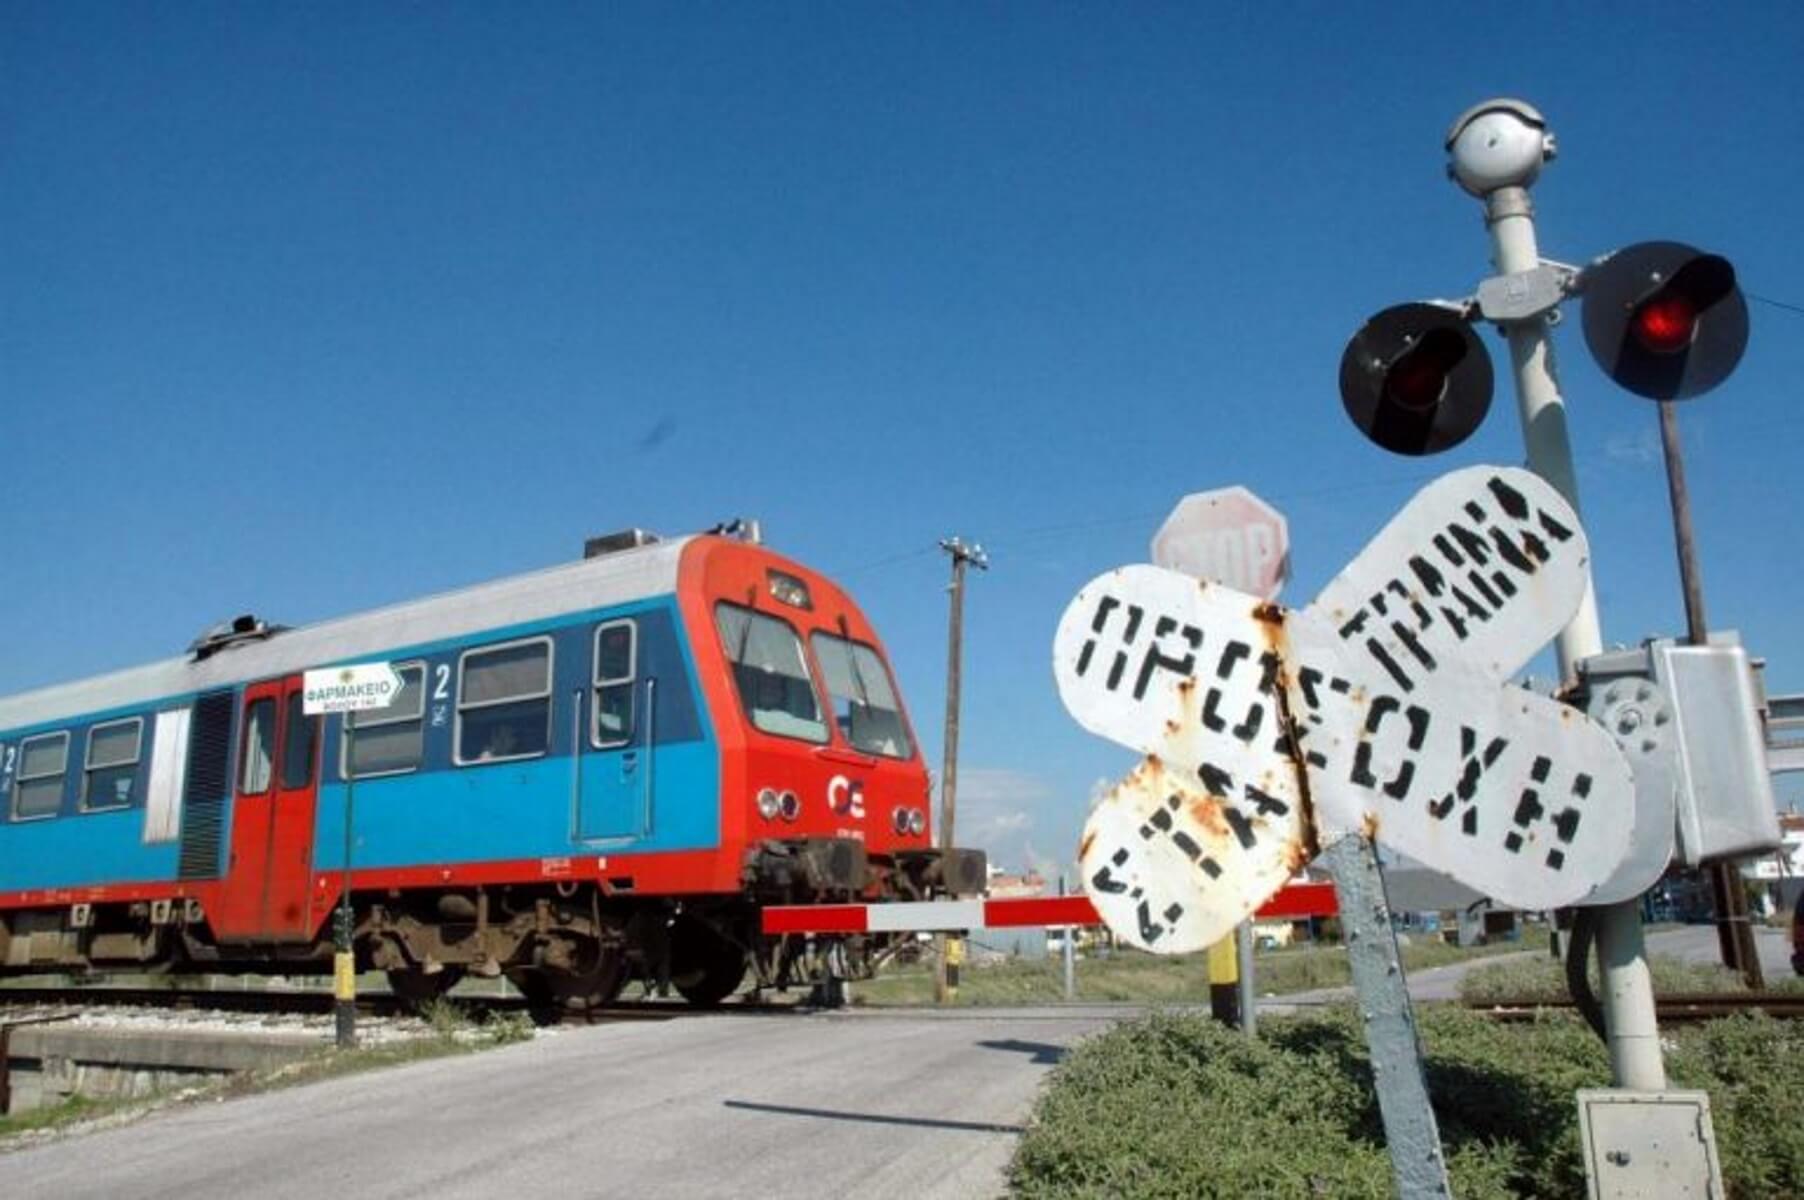 Θεσσαλονίκη: Η γυναίκα έπεσε από τη μηχανή πριν αυτή “σκάσει” πάνω στο τρένο!